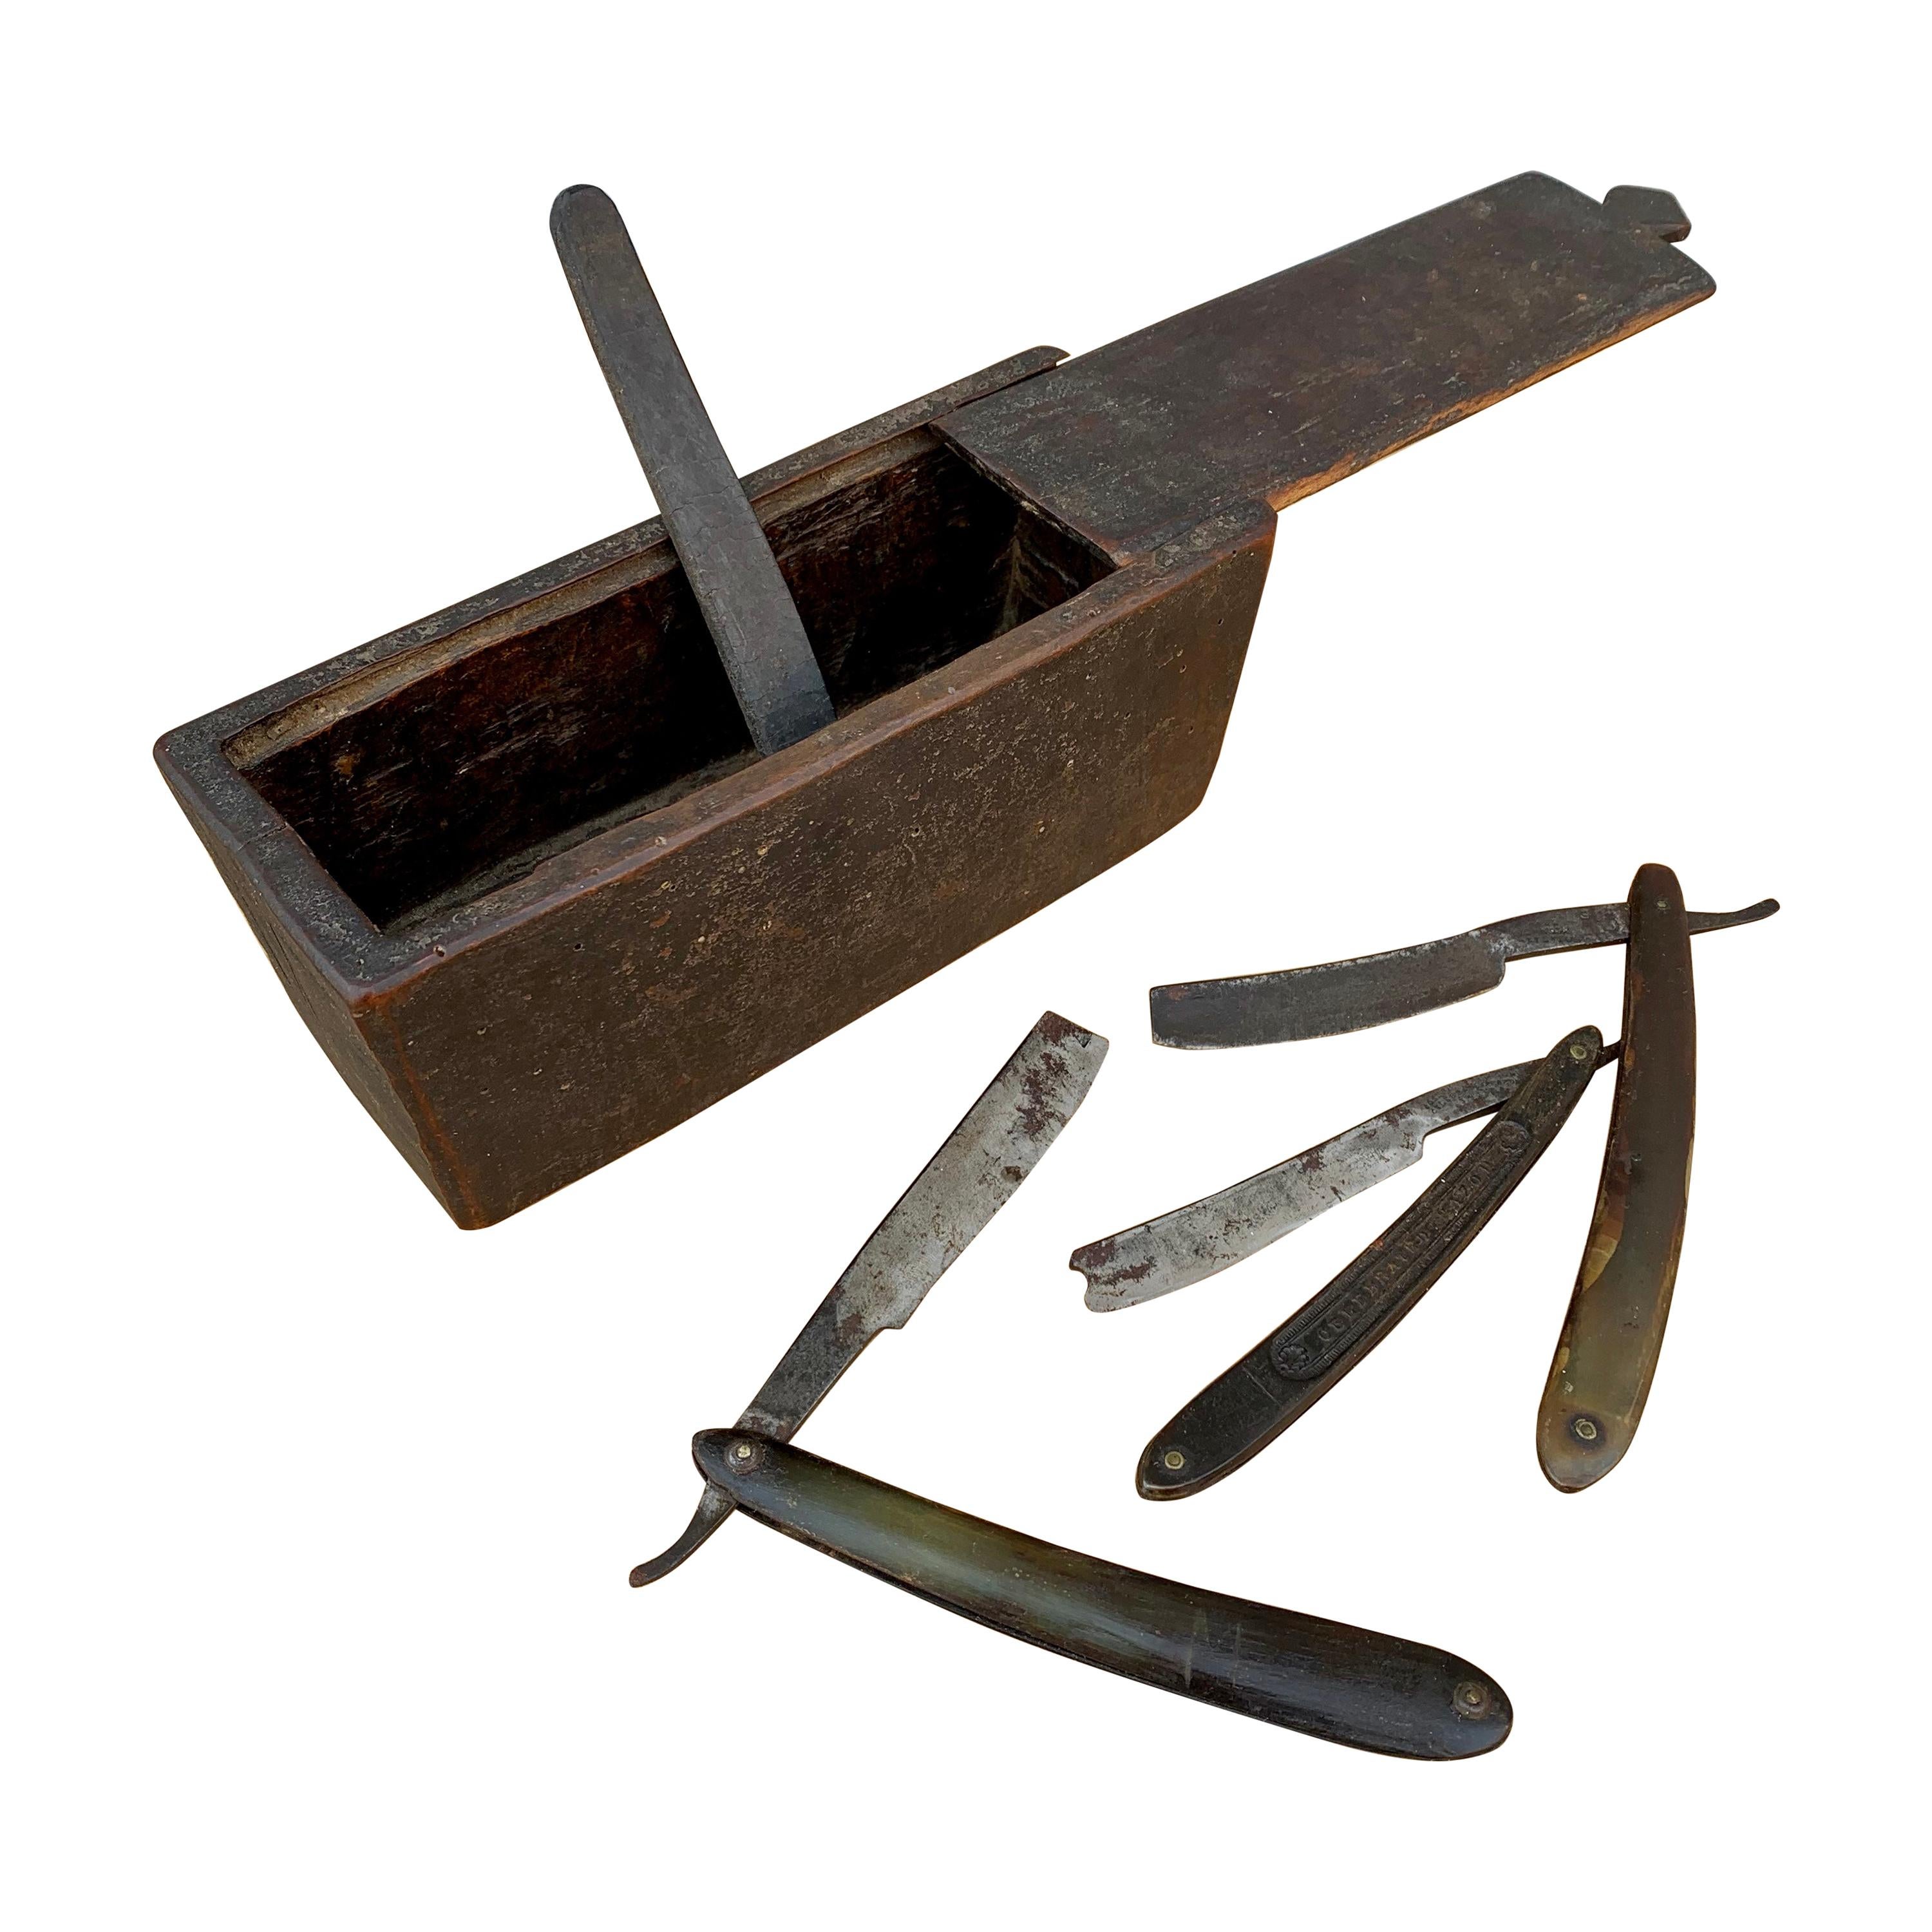 Boîte d'art populaire suédoise du 19ème siècle en bois avec couteaux de façonnage